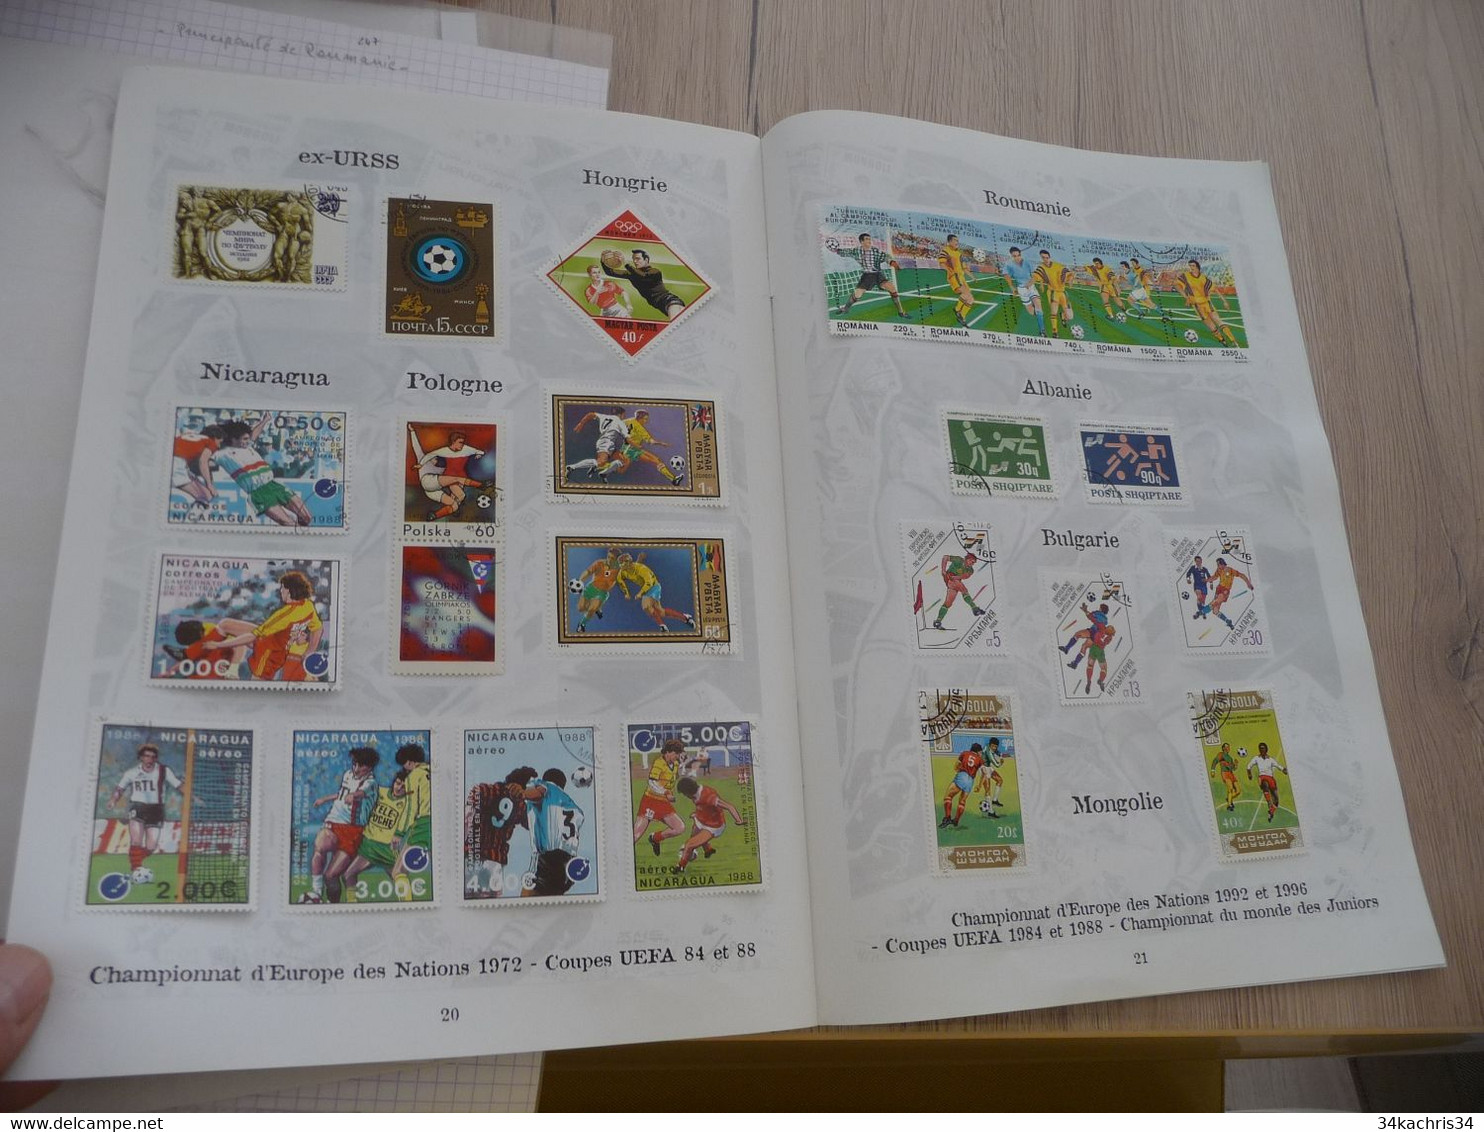 Football coupe du Monde cahier collector + de 170 TP et 5 blocs